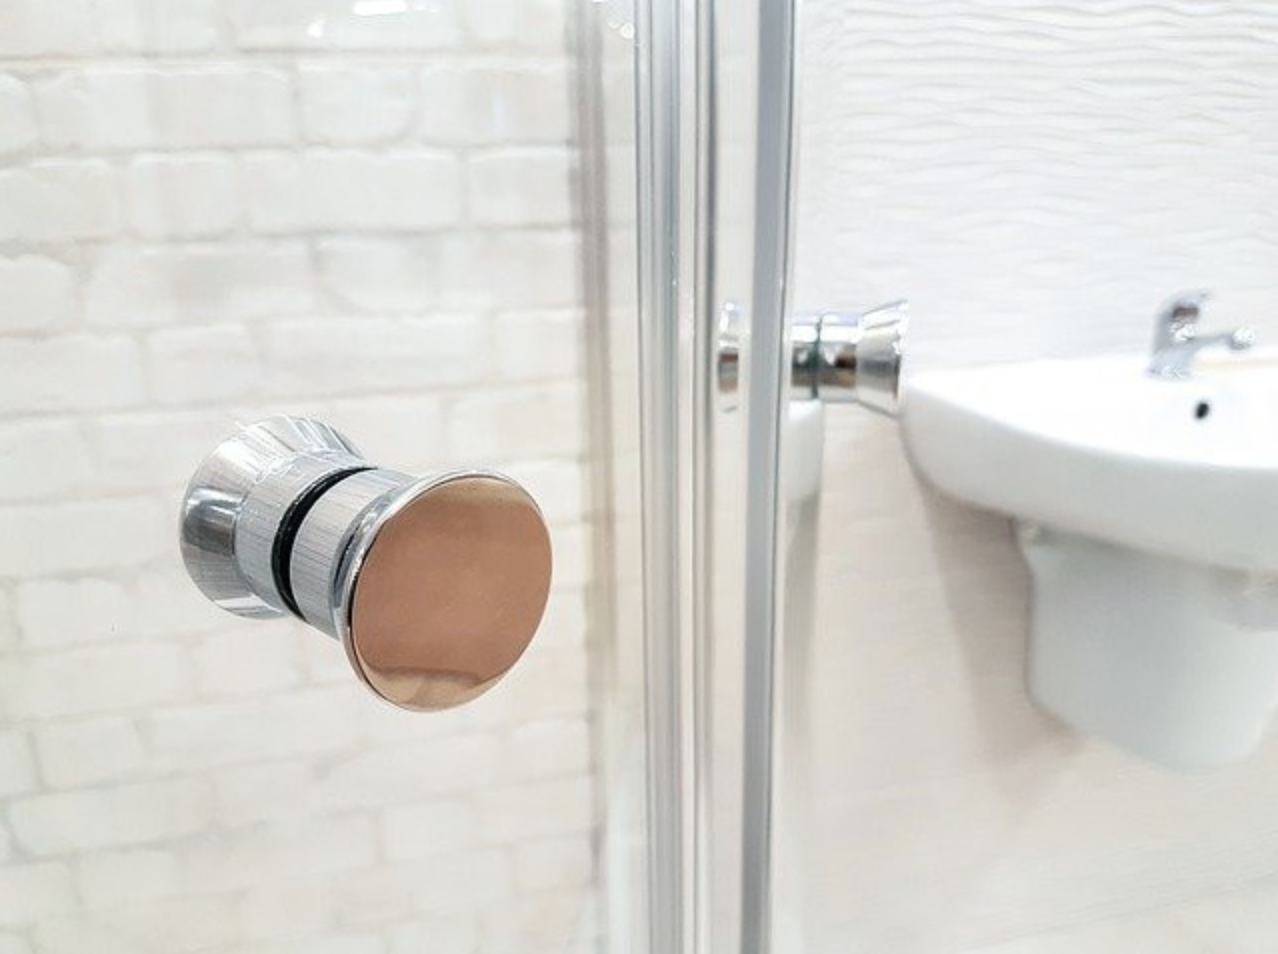 How to Keep Glass Shower Doors Clean - Clean Shower Door